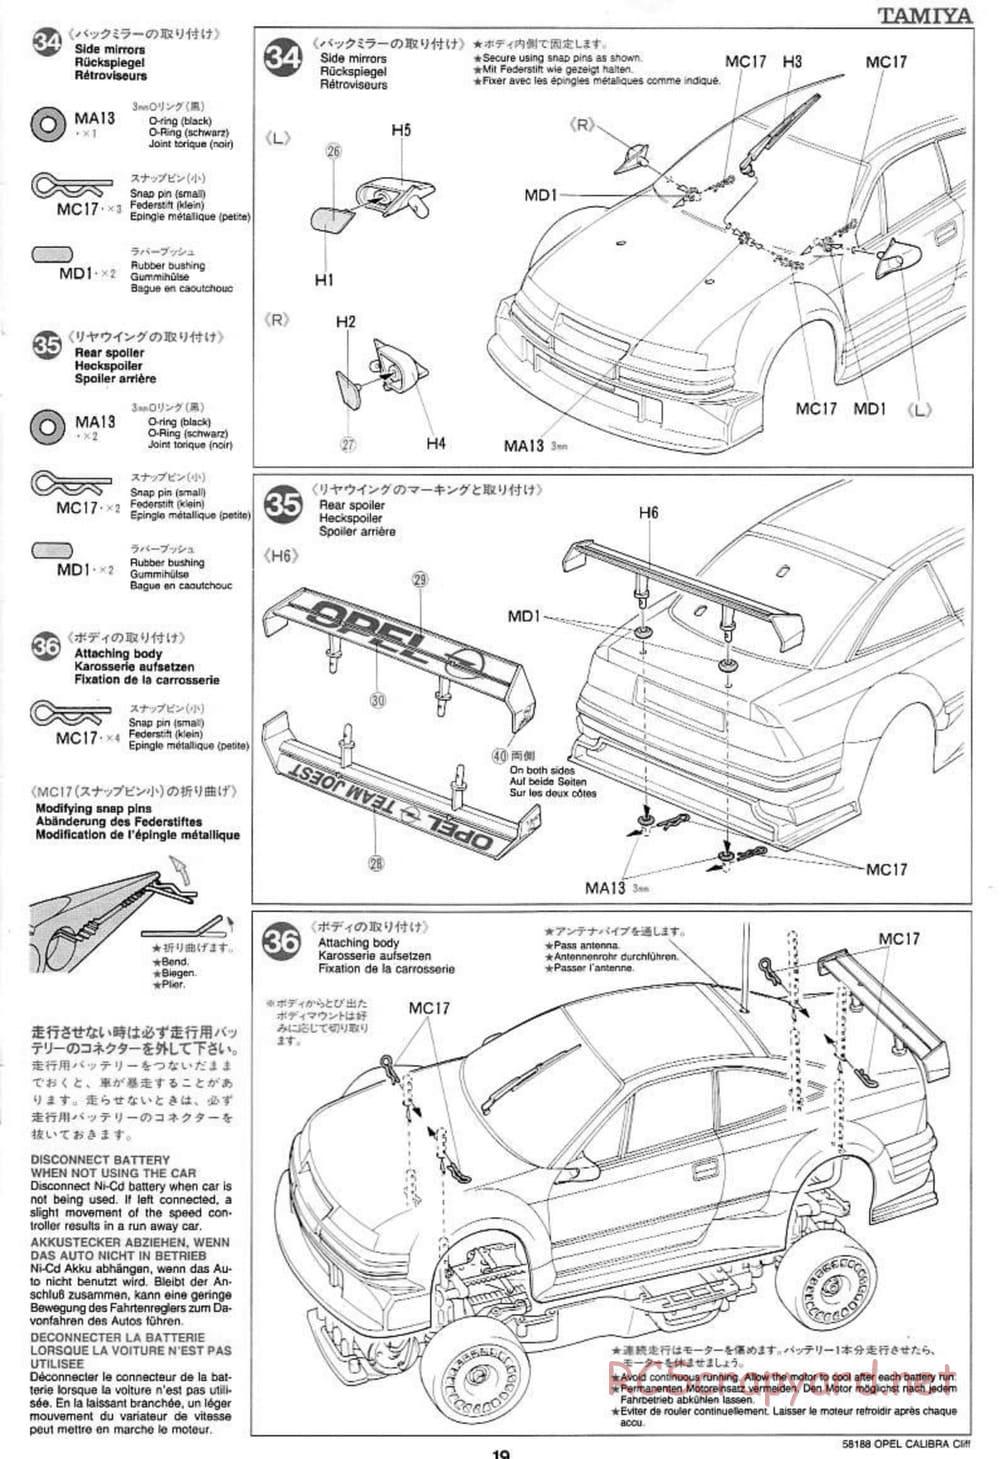 Tamiya - Opel Calibra Cliff - TA-03F Chassis - Manual - Page 19